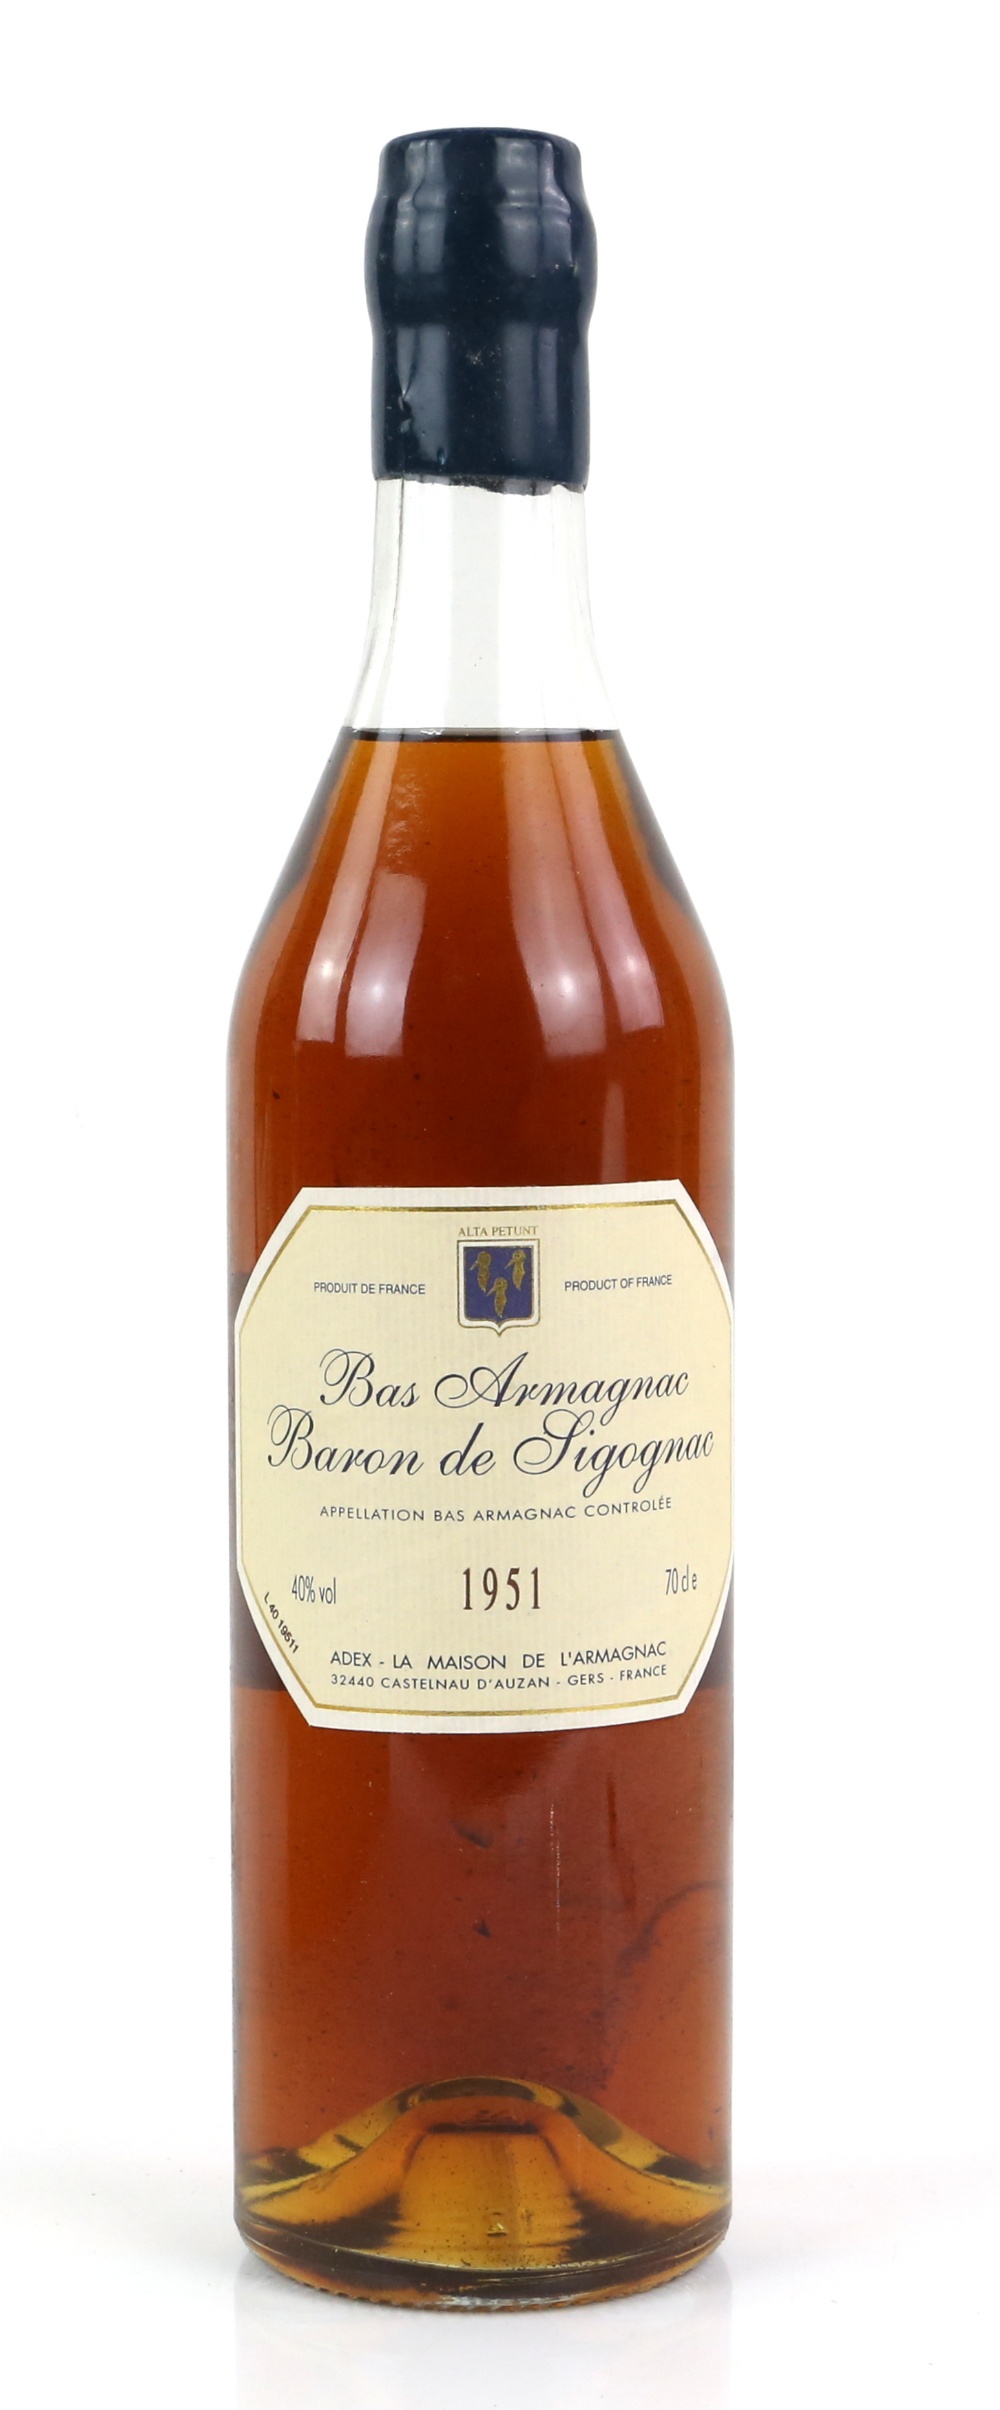 One bottle of Bas Armagnac Baron de Sigognac 1951 in wooden presentation case, 70cl, 40% vol - Image 2 of 3